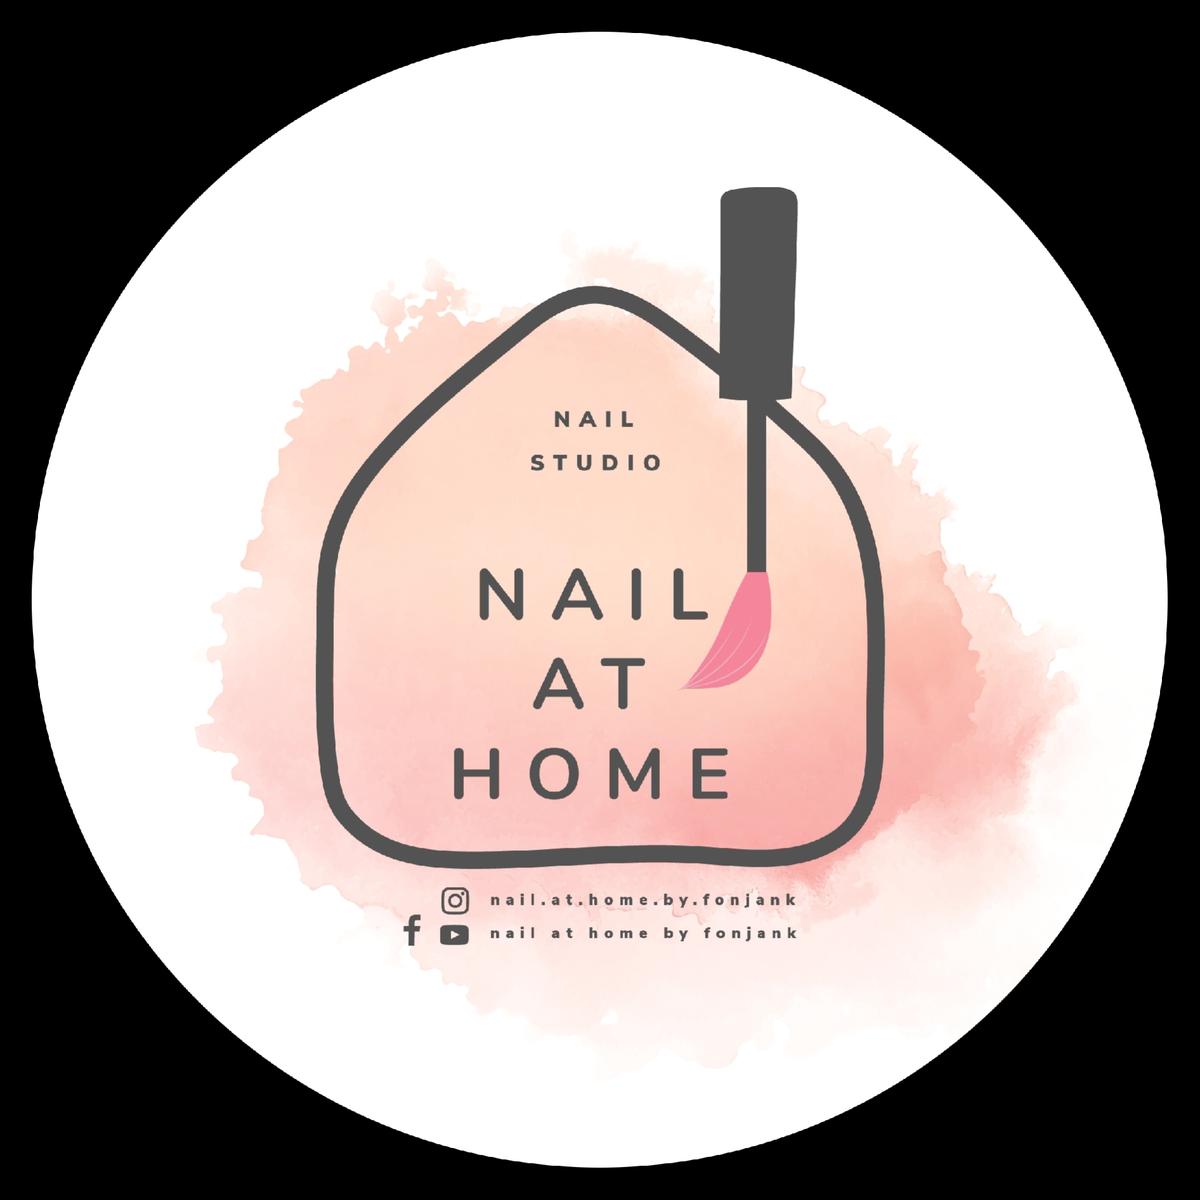 Nail at home